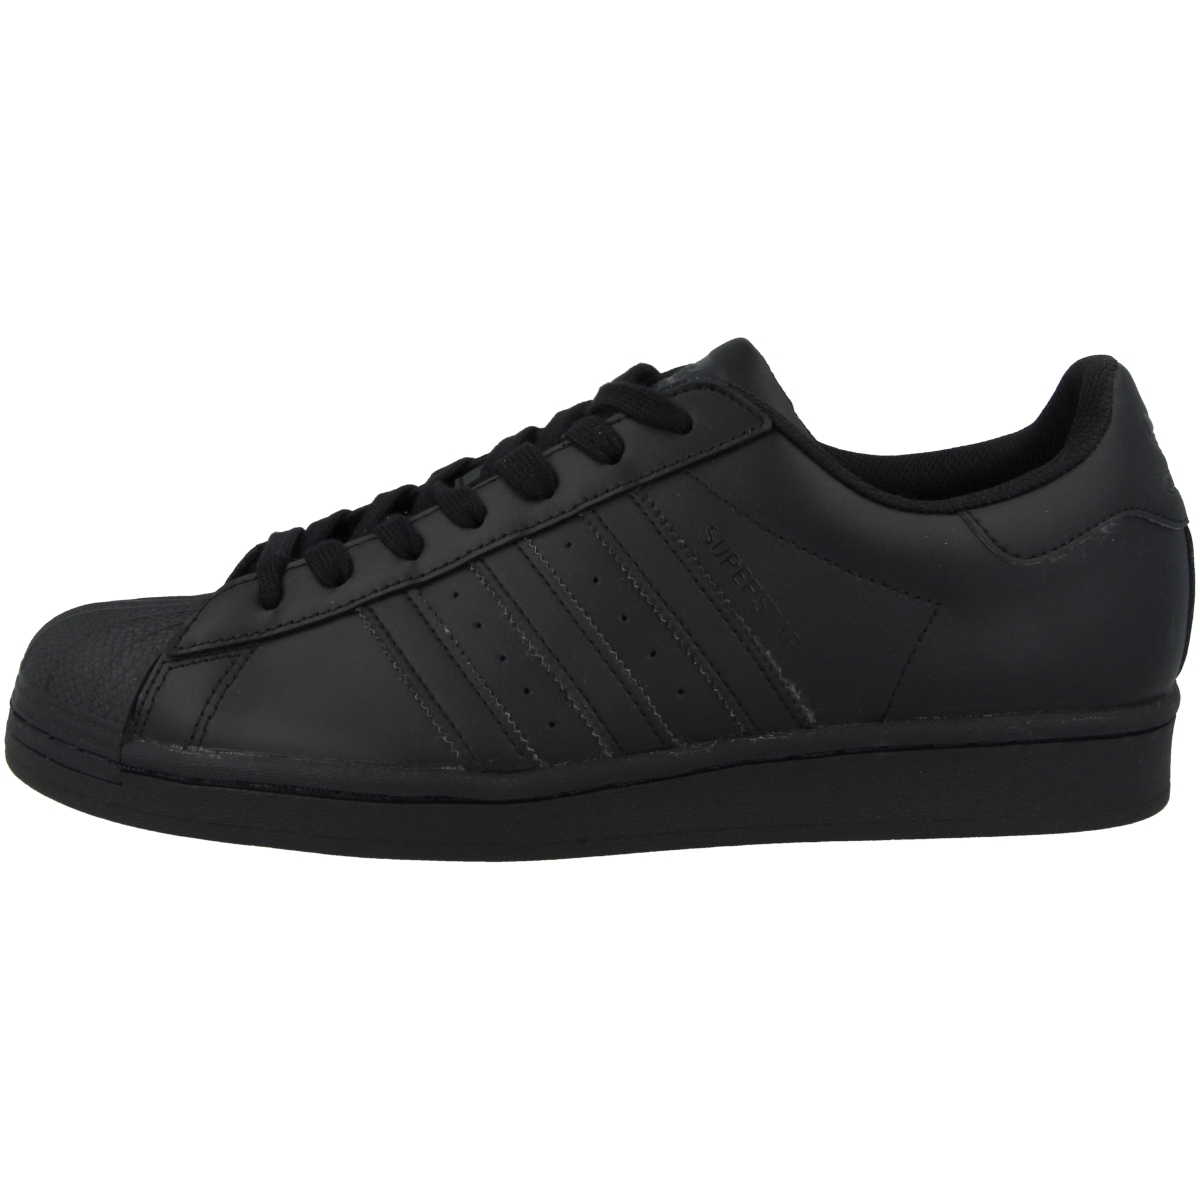 Adidas Superstar Schuhe schwarz